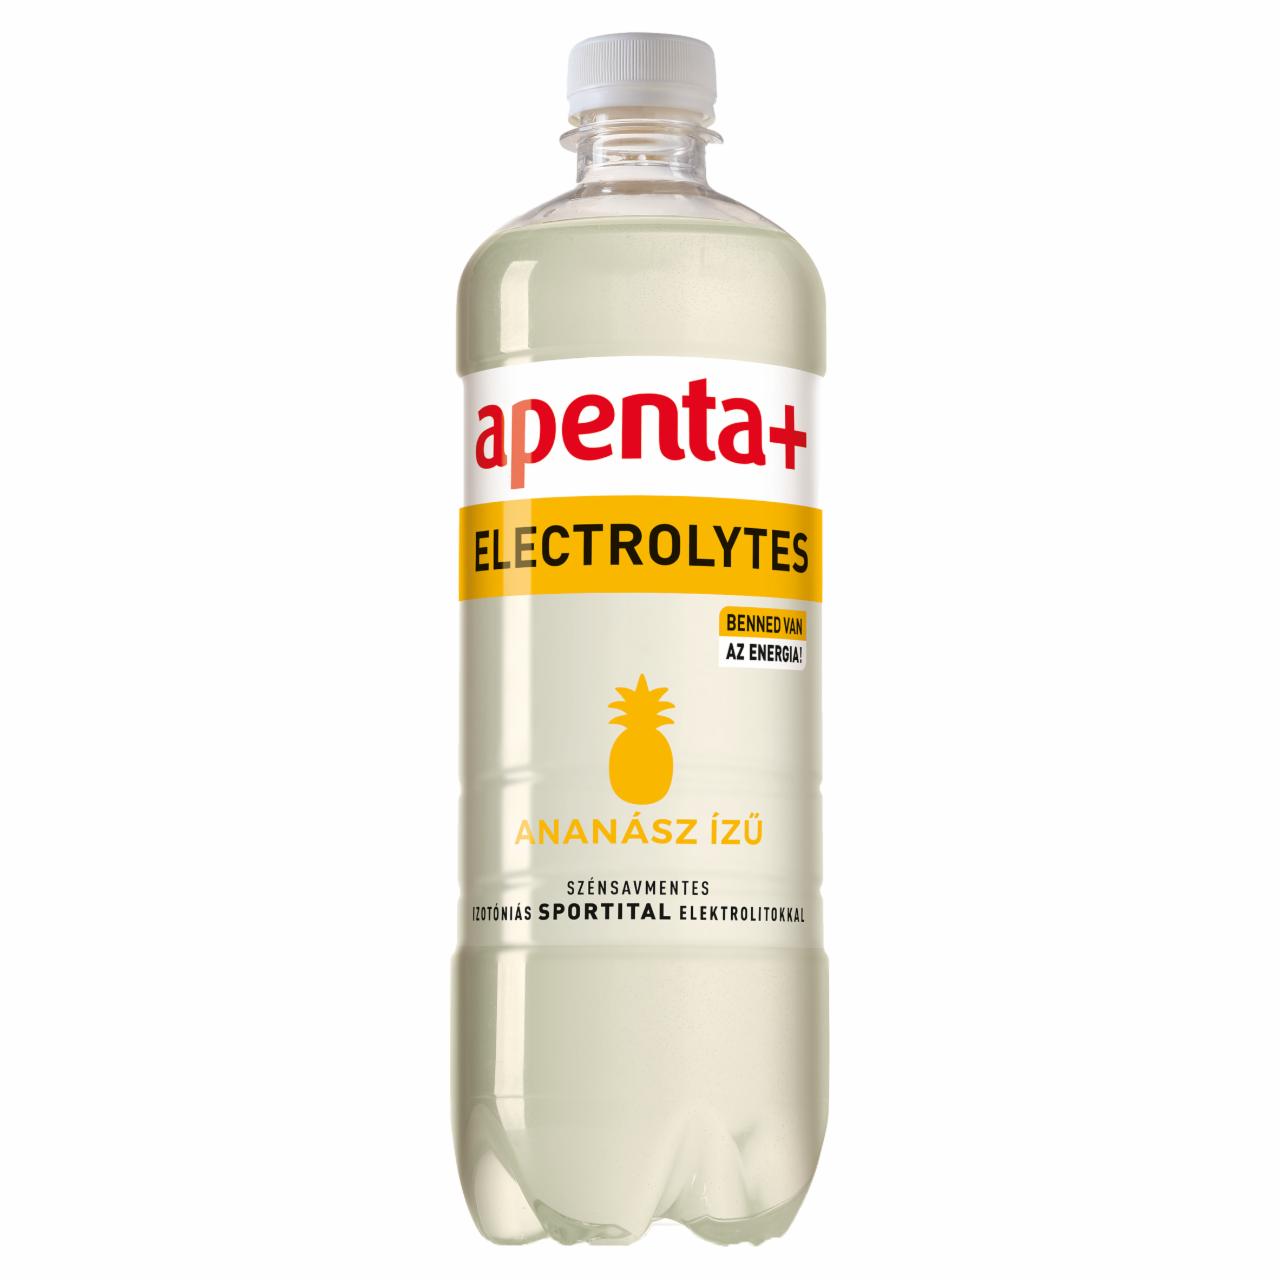 Képek - Apenta+ Electrolytes ananász ízű szénsavmentes izotóniás sportital